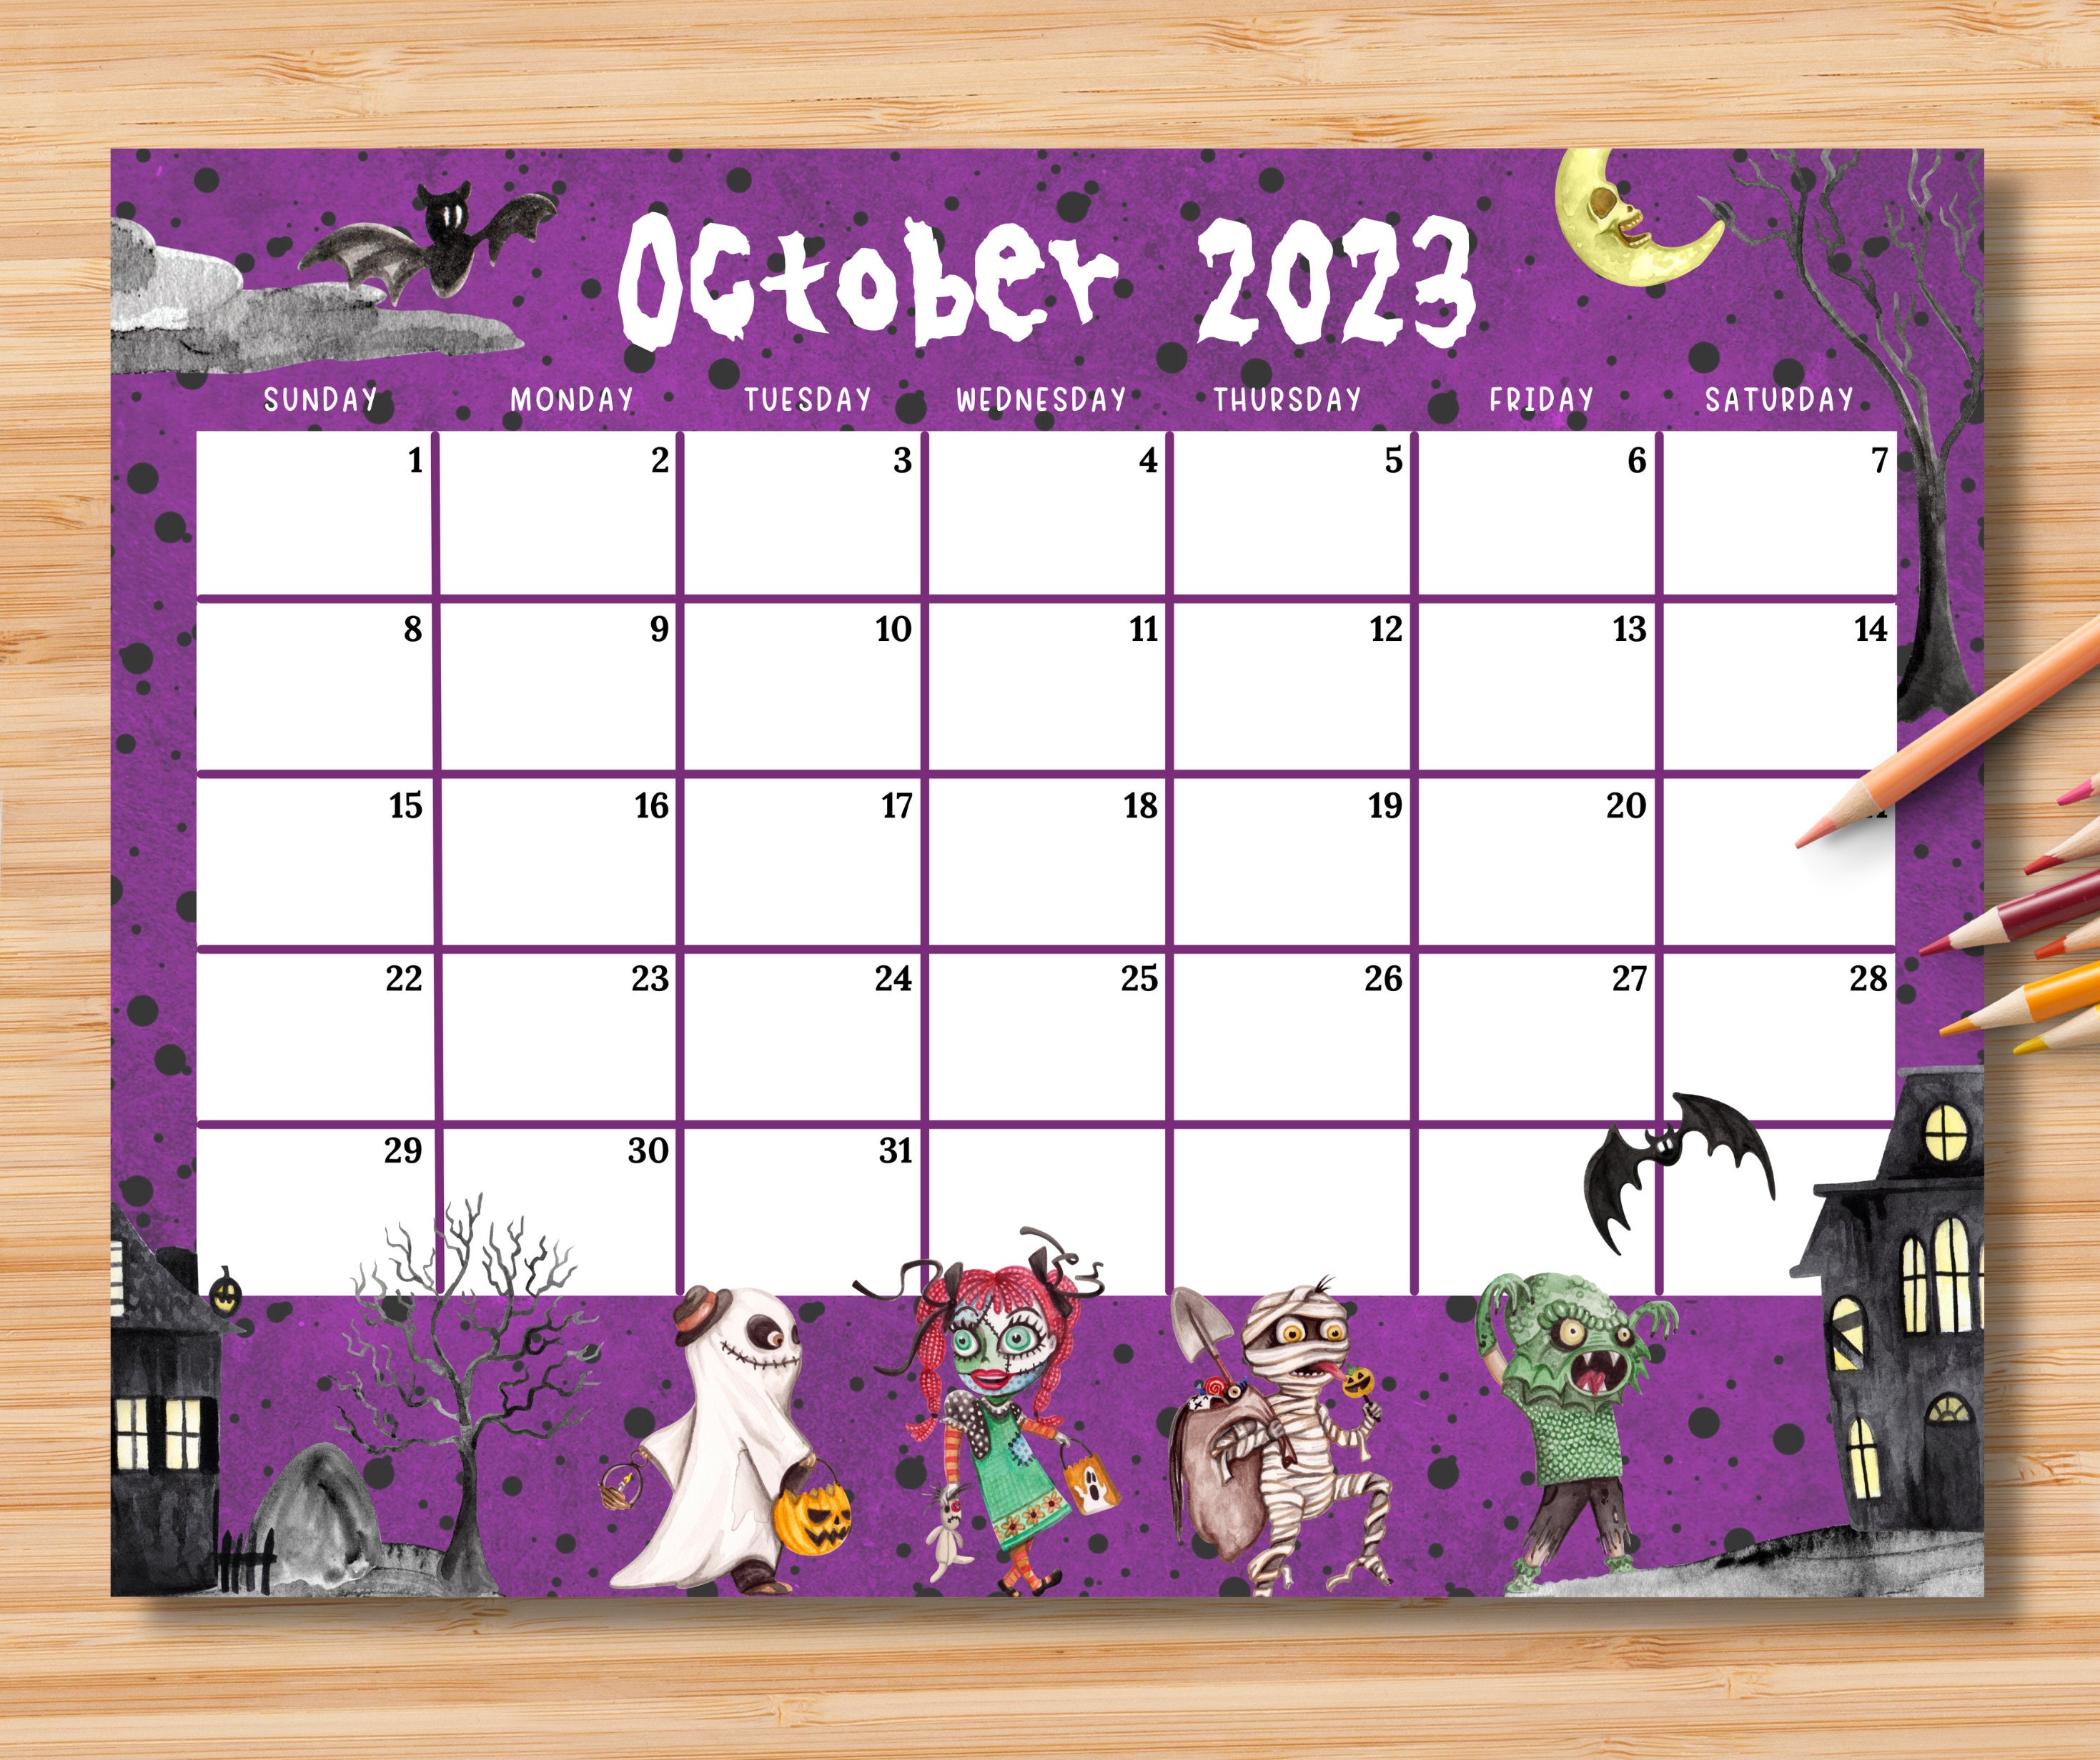 October 2023 Calendar Halloween Free - Get Calendar 2023 Update